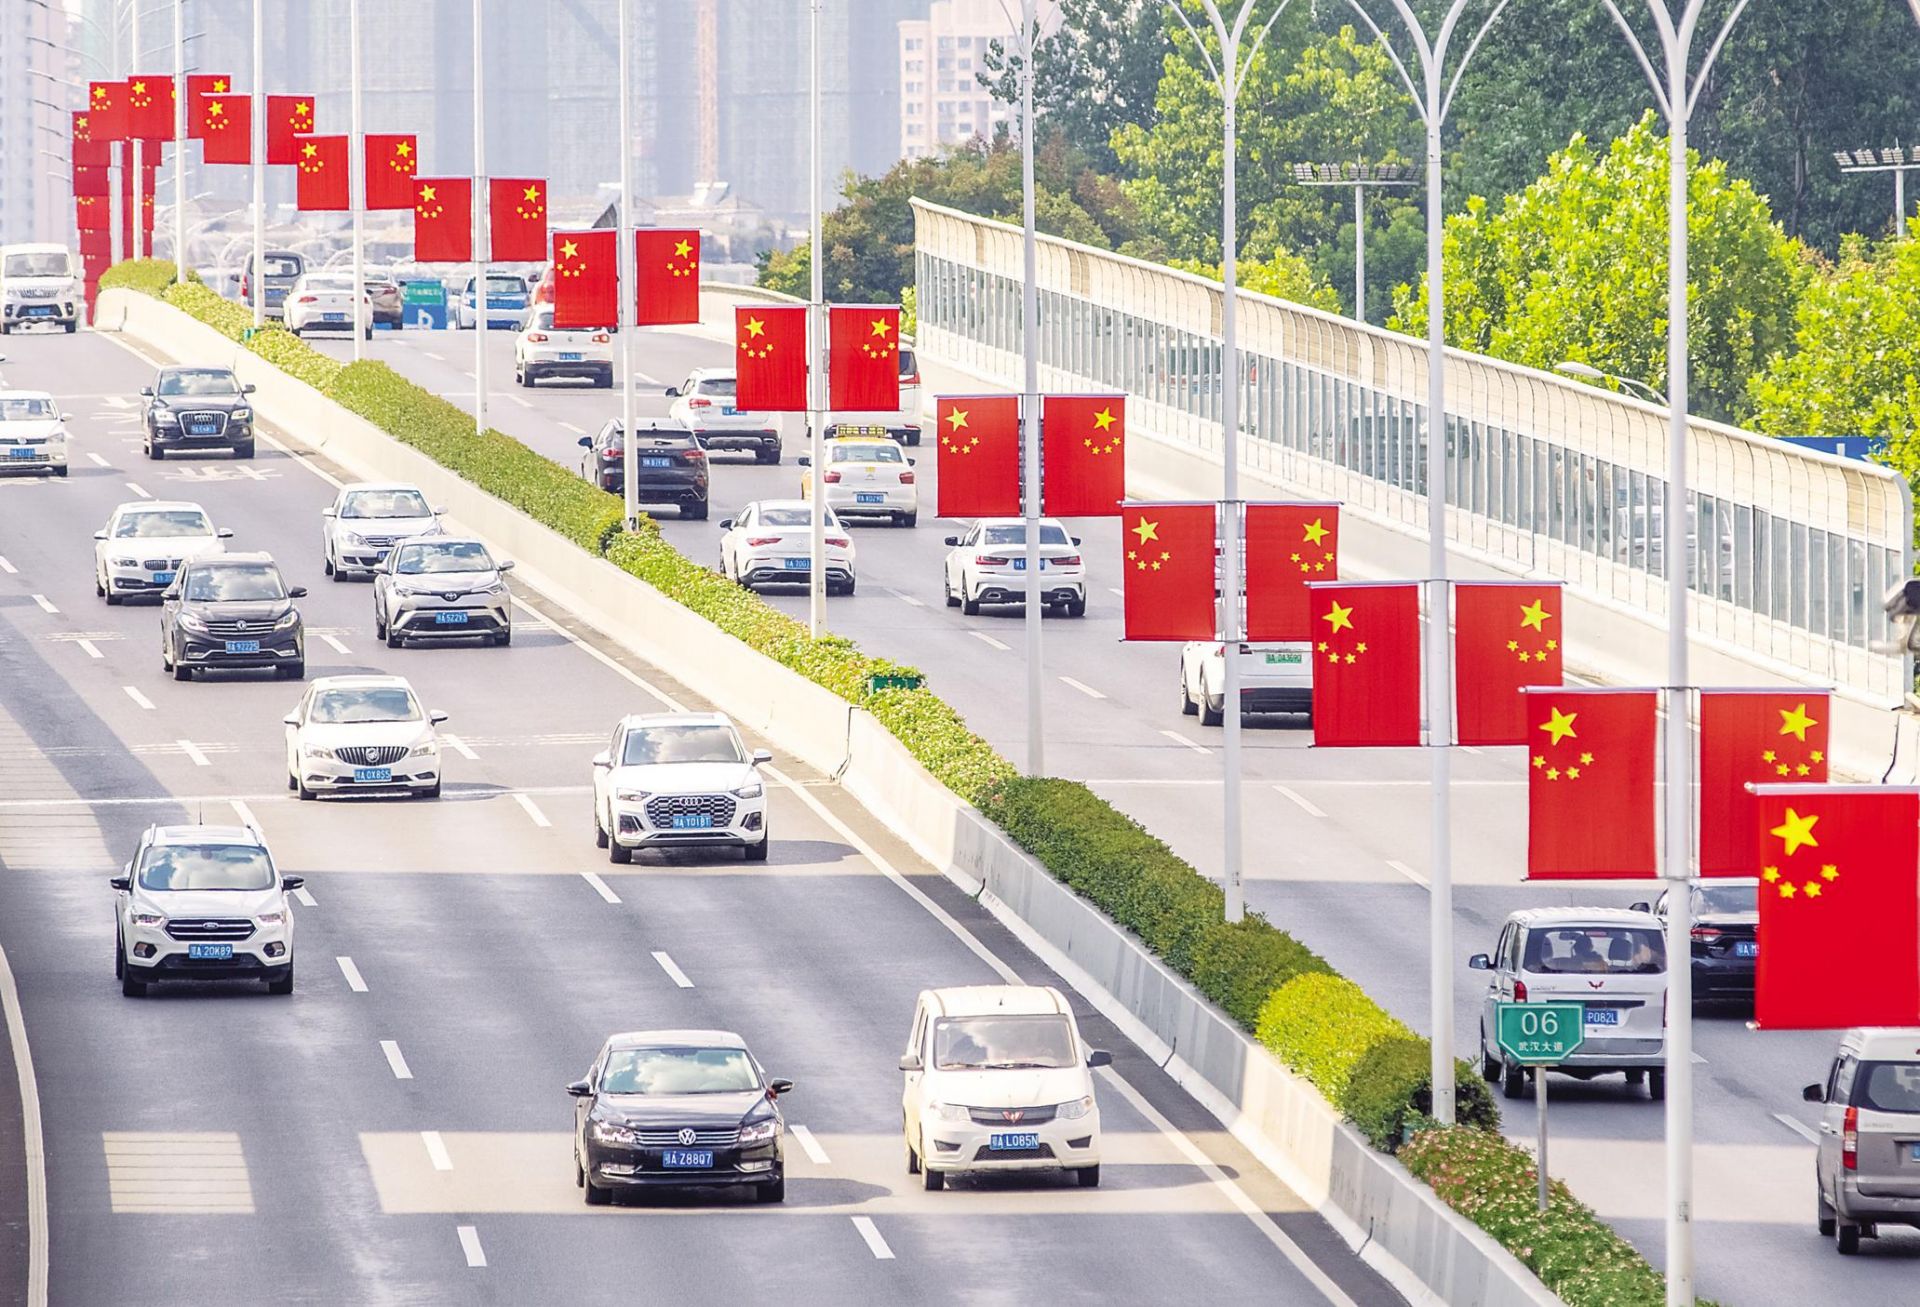 临近国庆节,武汉城区各条主干道和桥梁的路灯杆上开始悬挂国旗,4万面